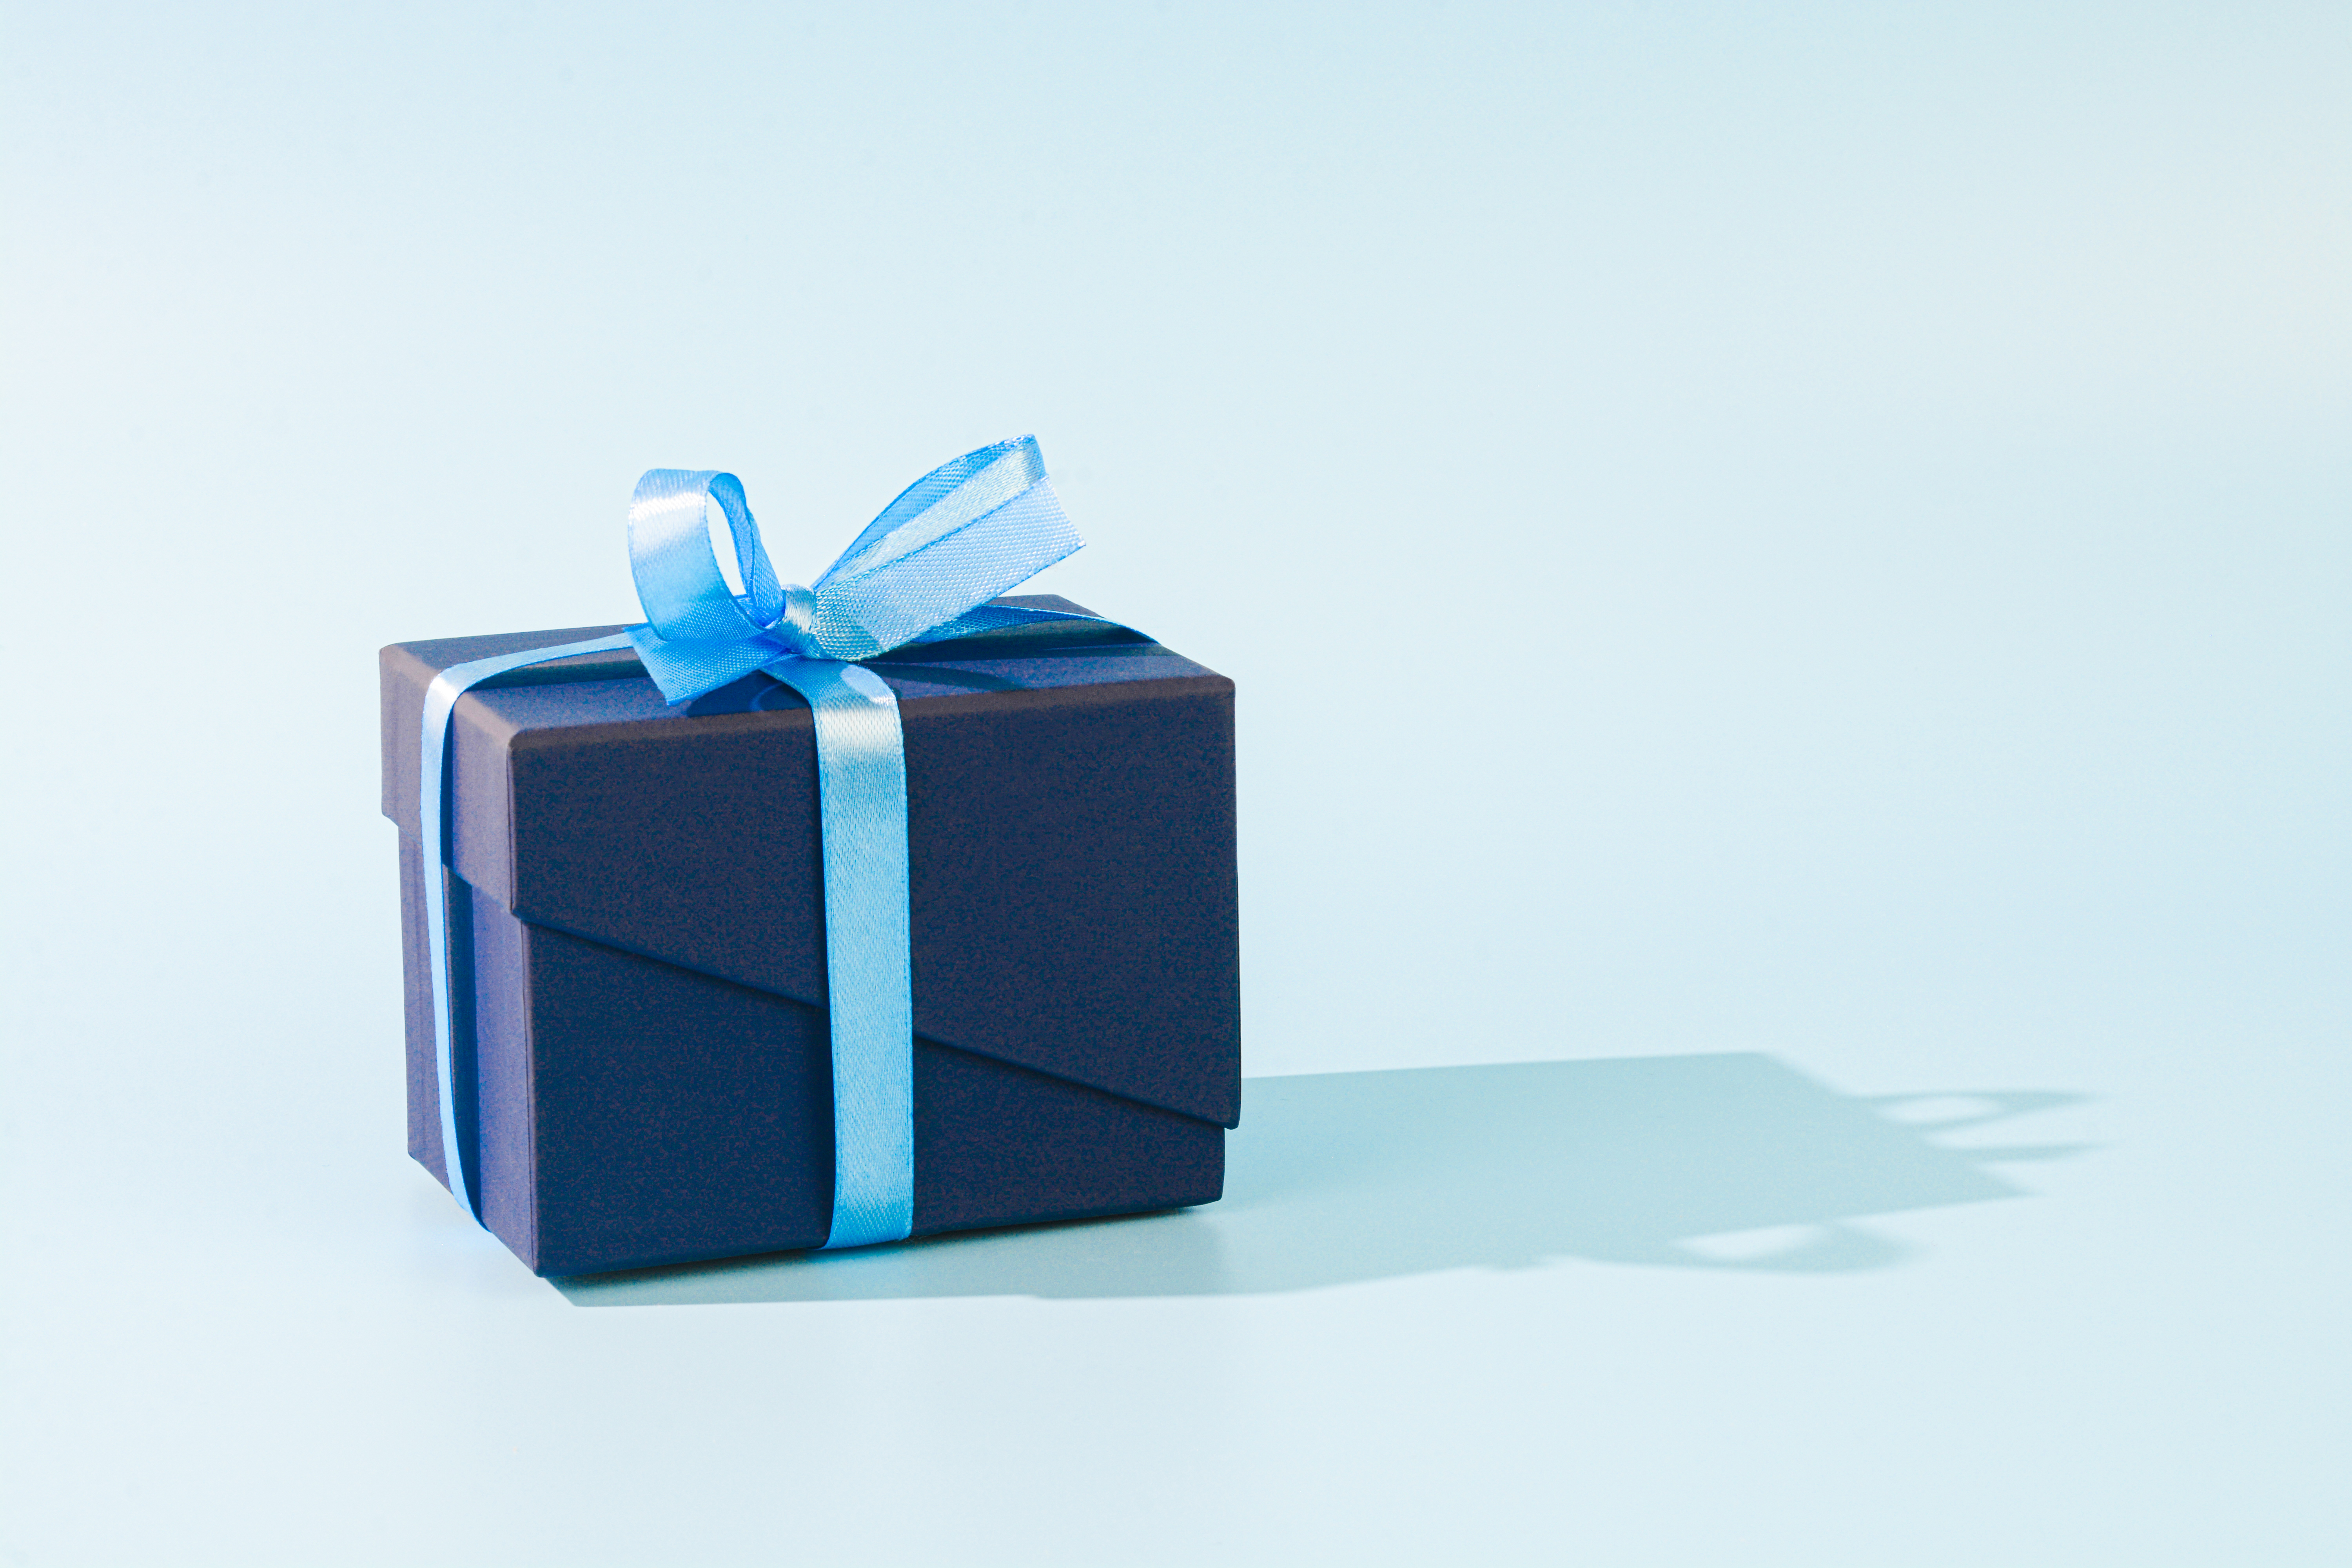 Un cadeau bleu foncé enveloppé d'un nœud bleu clair | Source : Getty Images